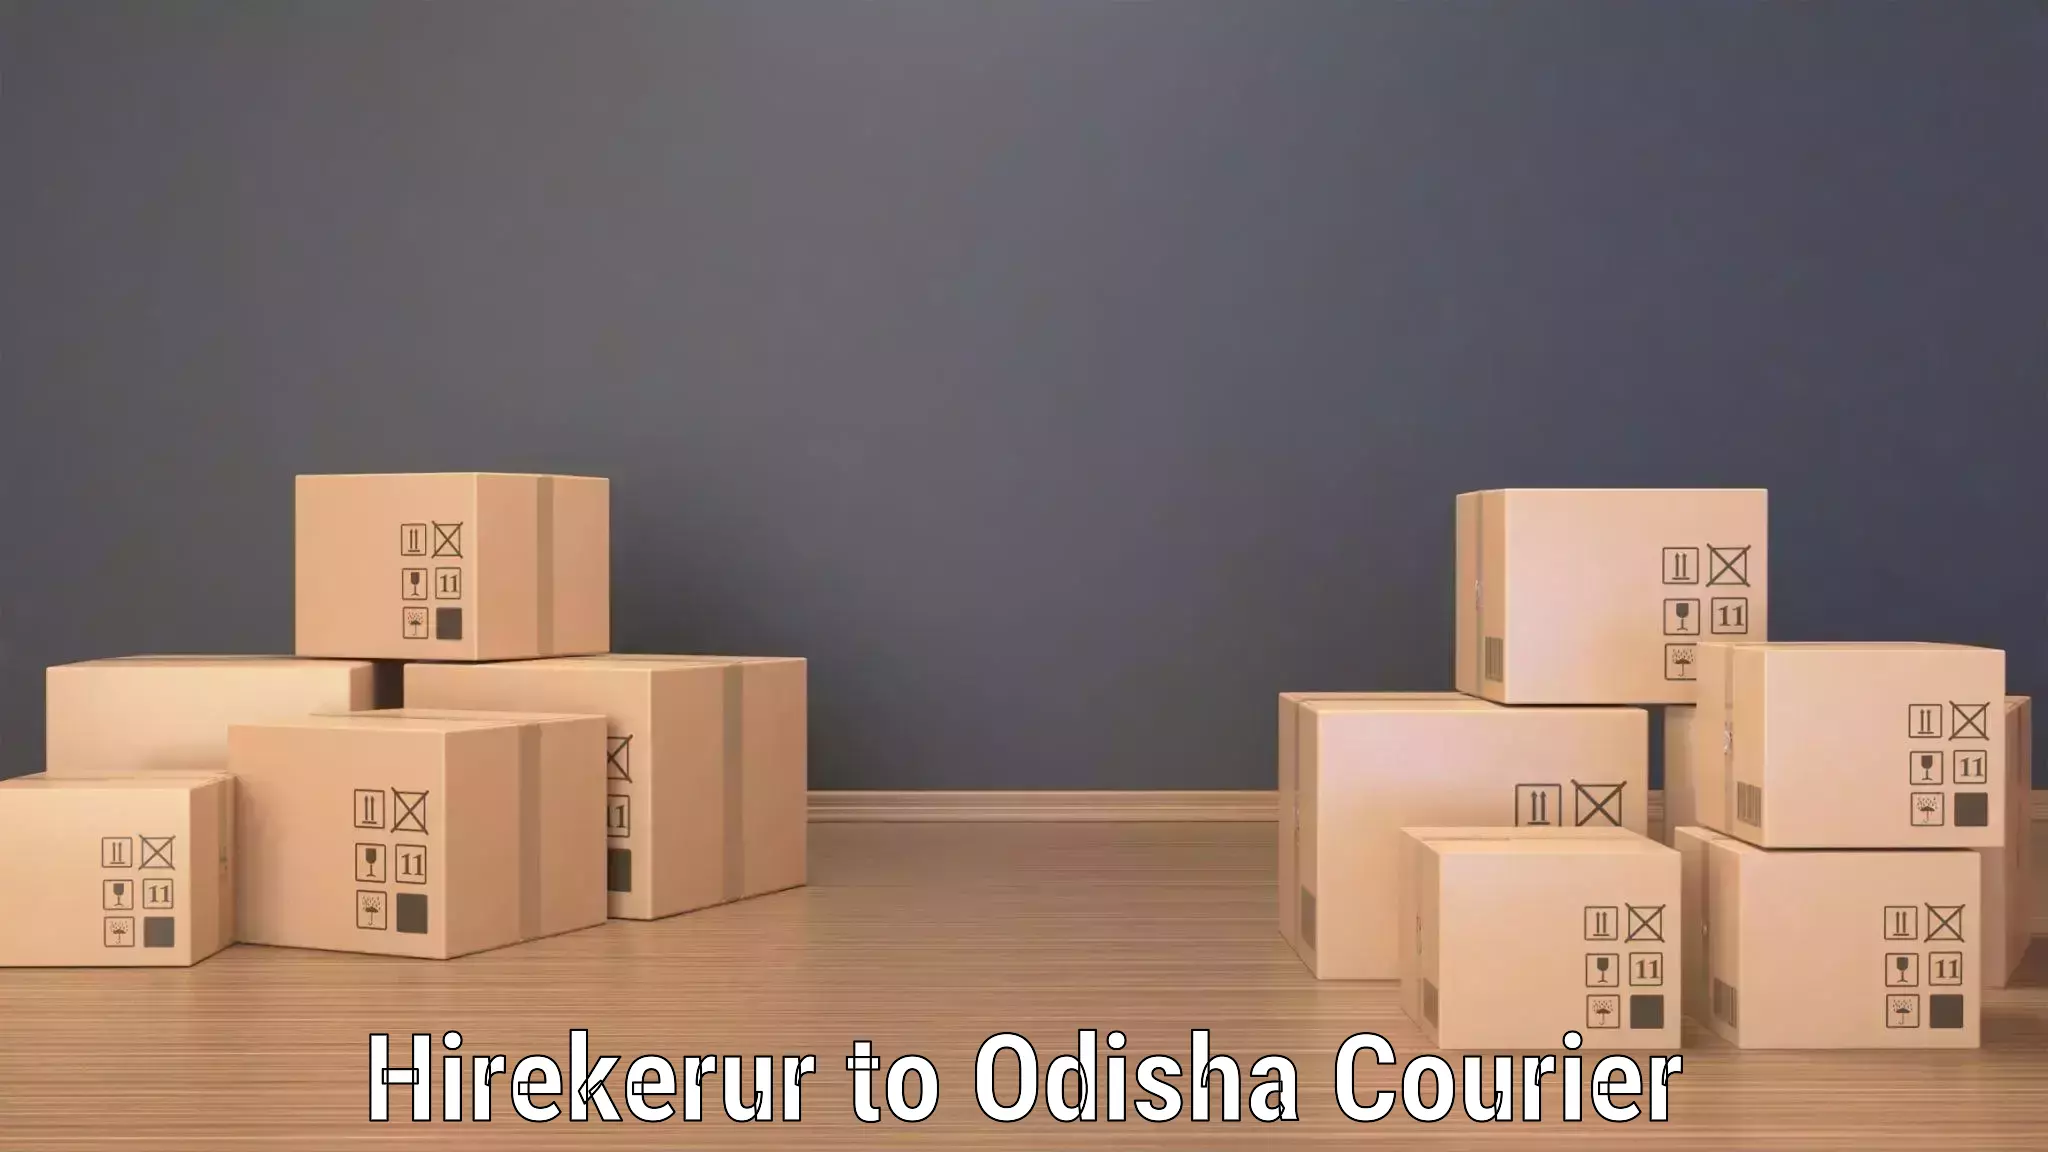 Urgent courier needs in Hirekerur to Joda